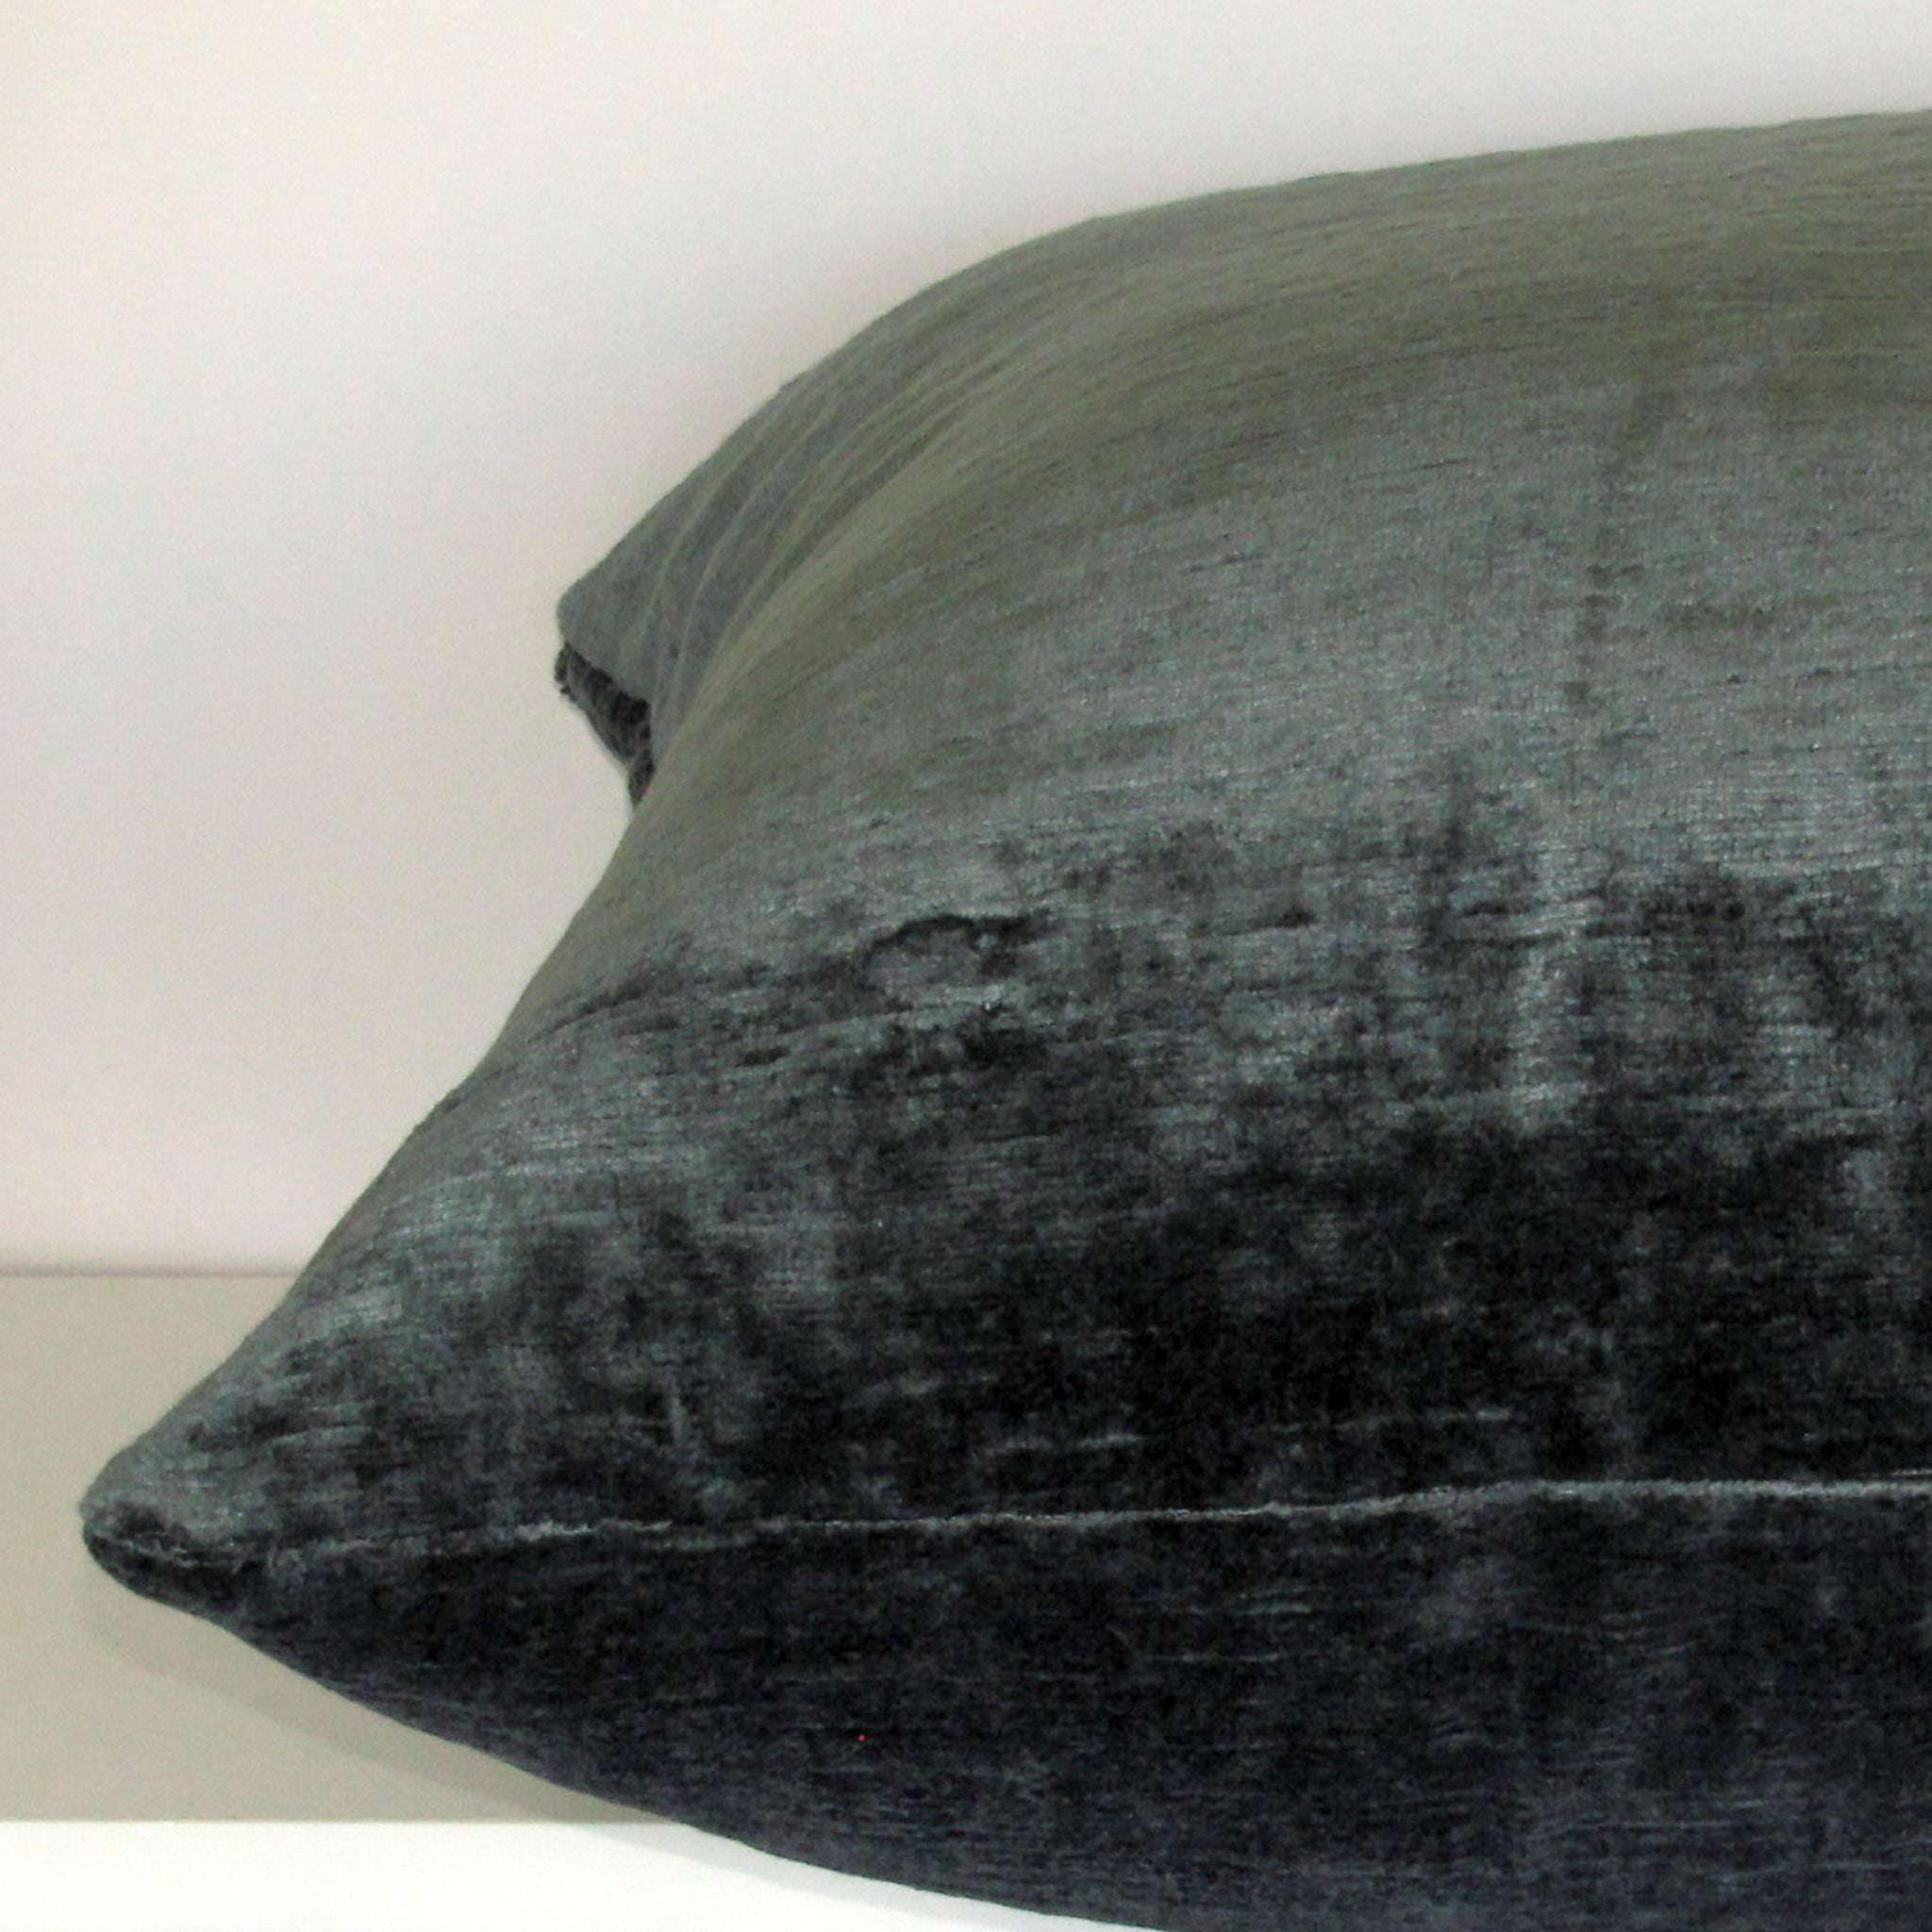 Bespoke Atlantic luxury Italian velvet cushion cover